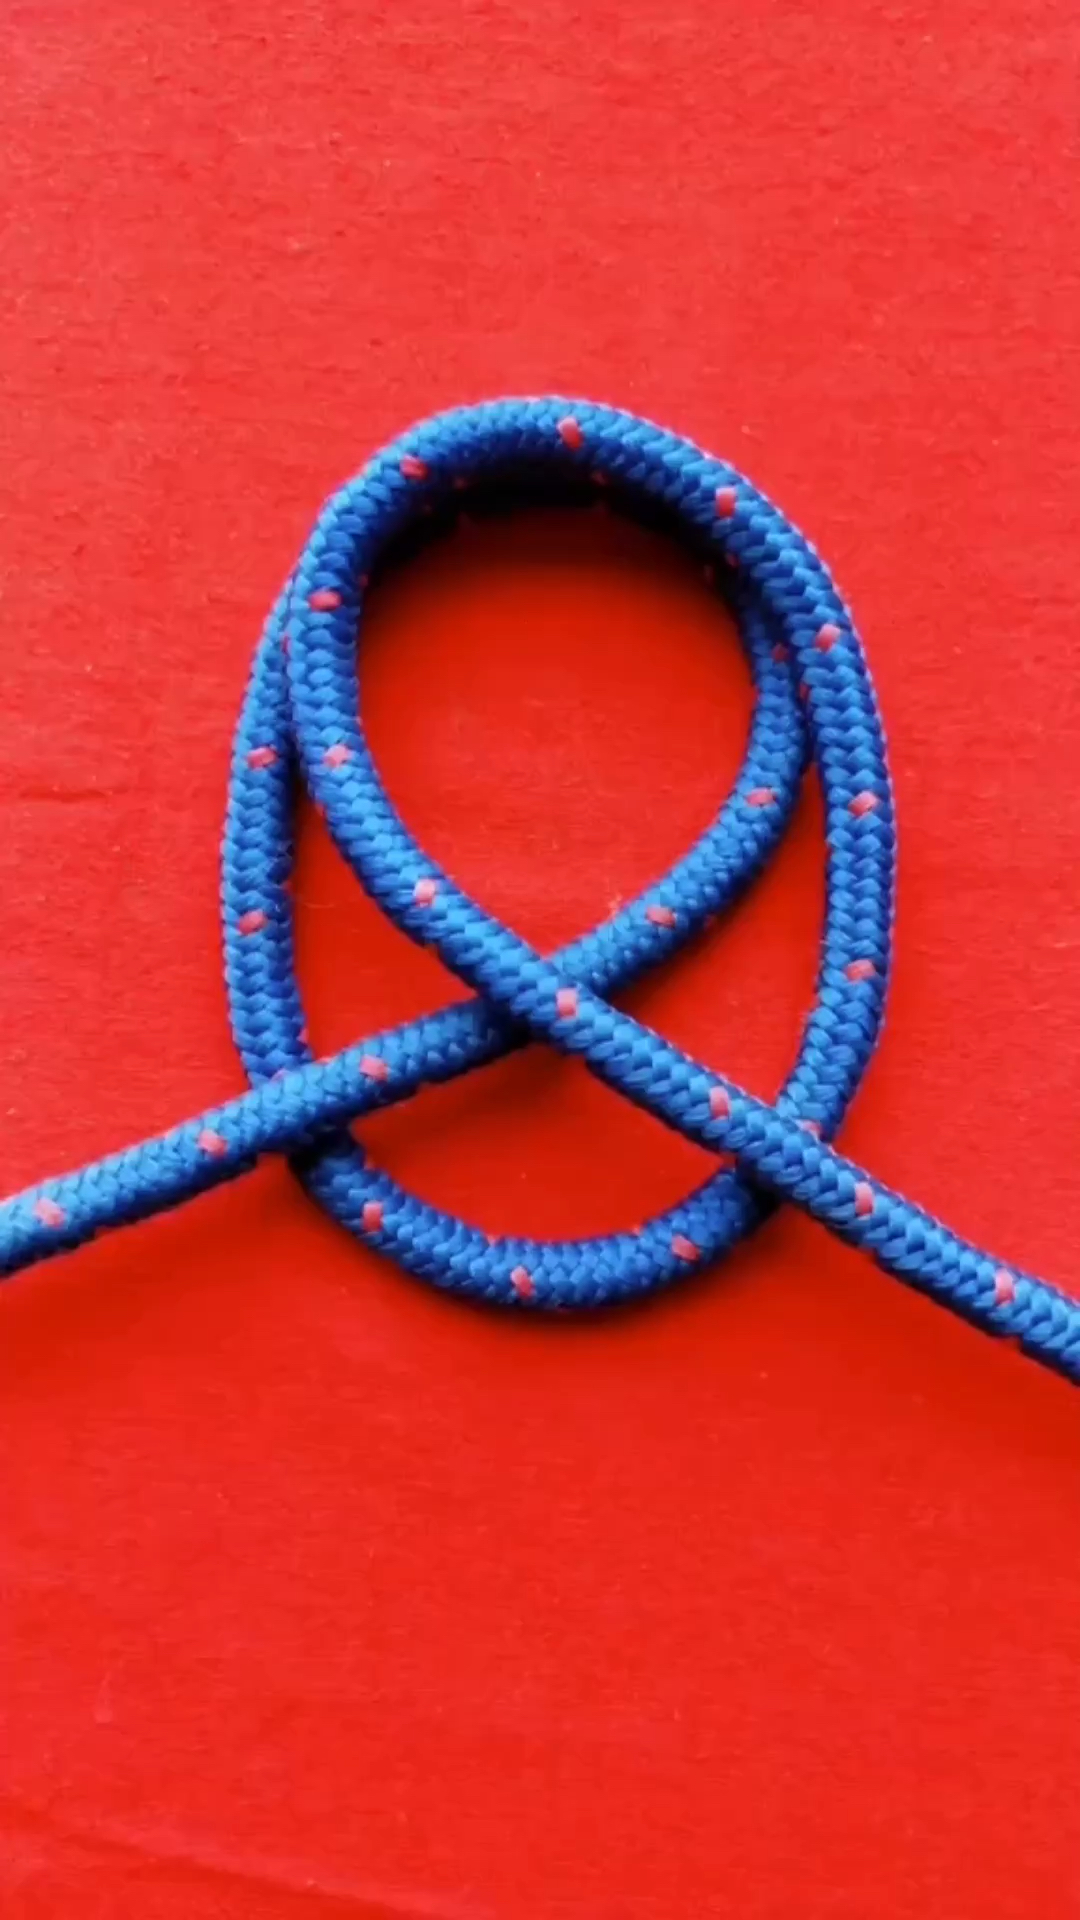 项链红绳吊坠打结方法图片